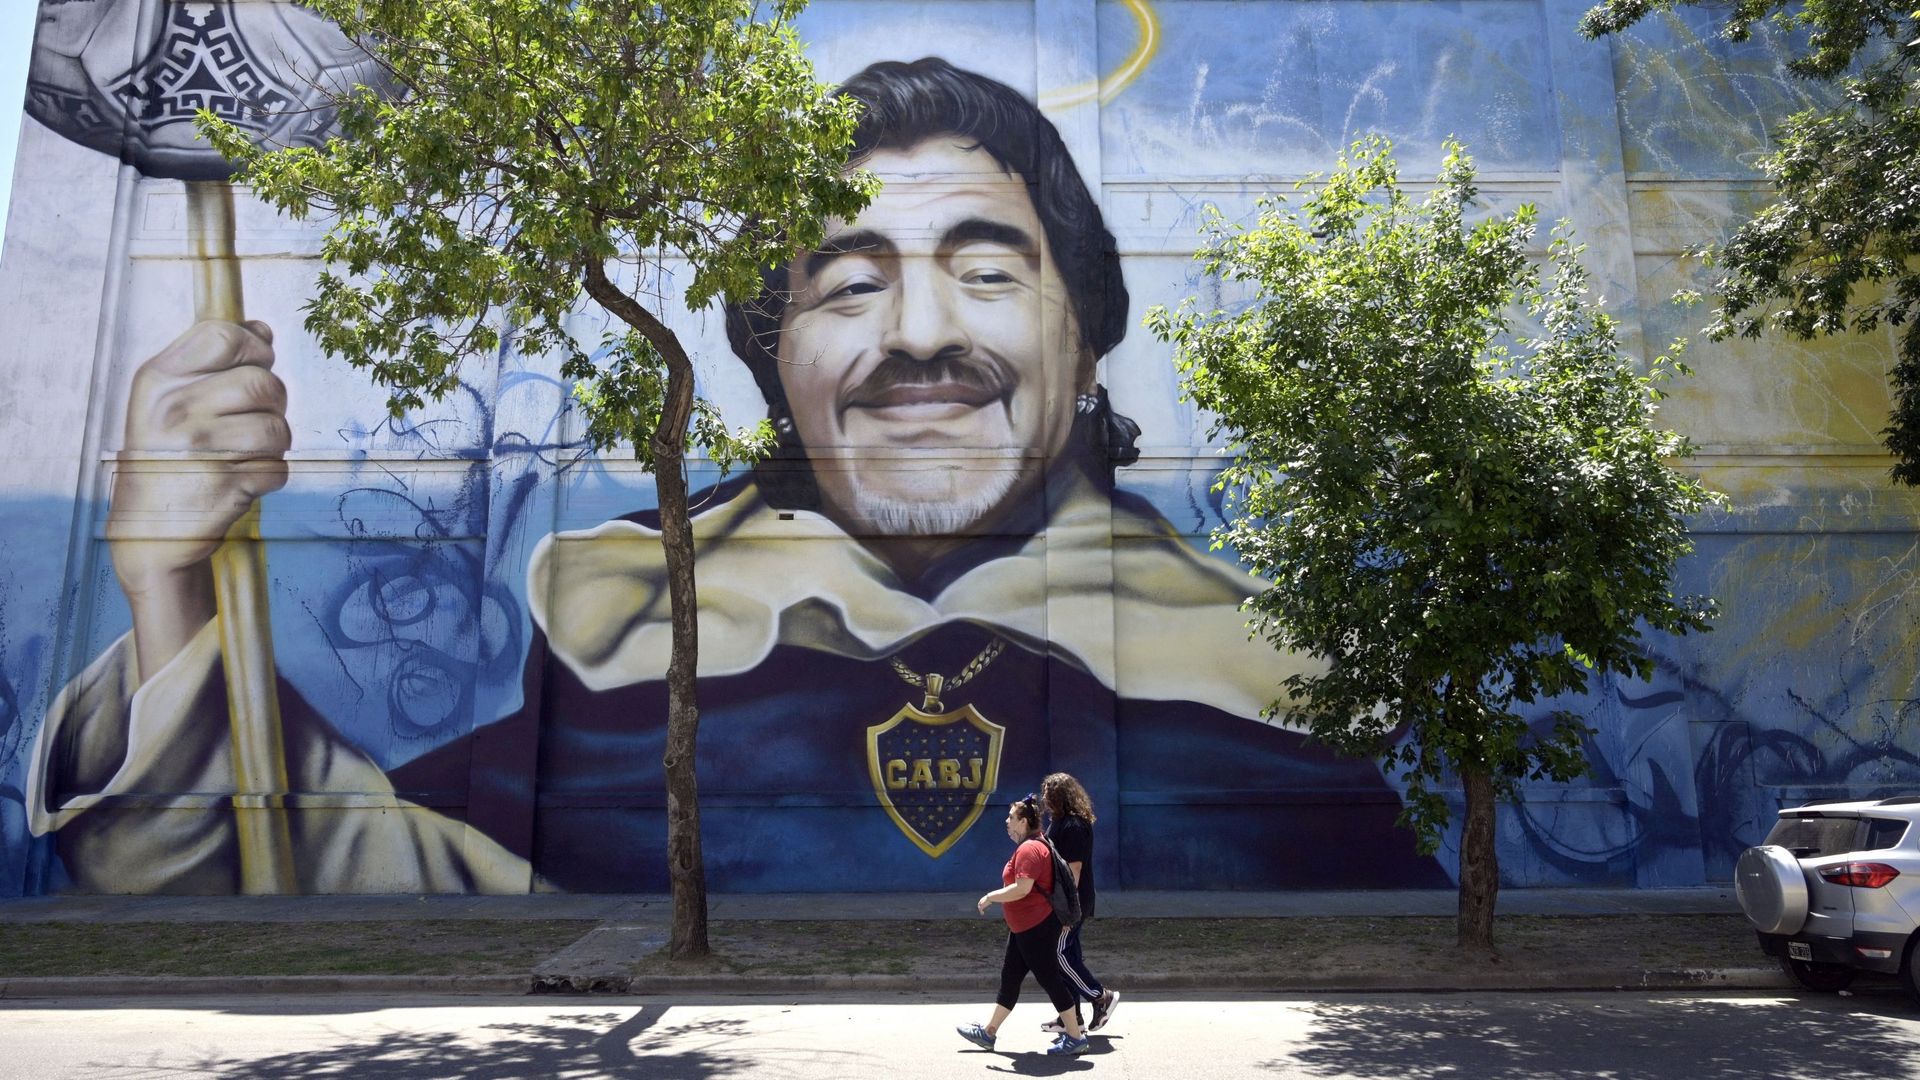 Une peinture murale représentant la star argentine, Diego Maradona, peinte par l’artiste Alfredo Segatori, est vu sur un mur du quartier de La Boca à Buenos Aires.